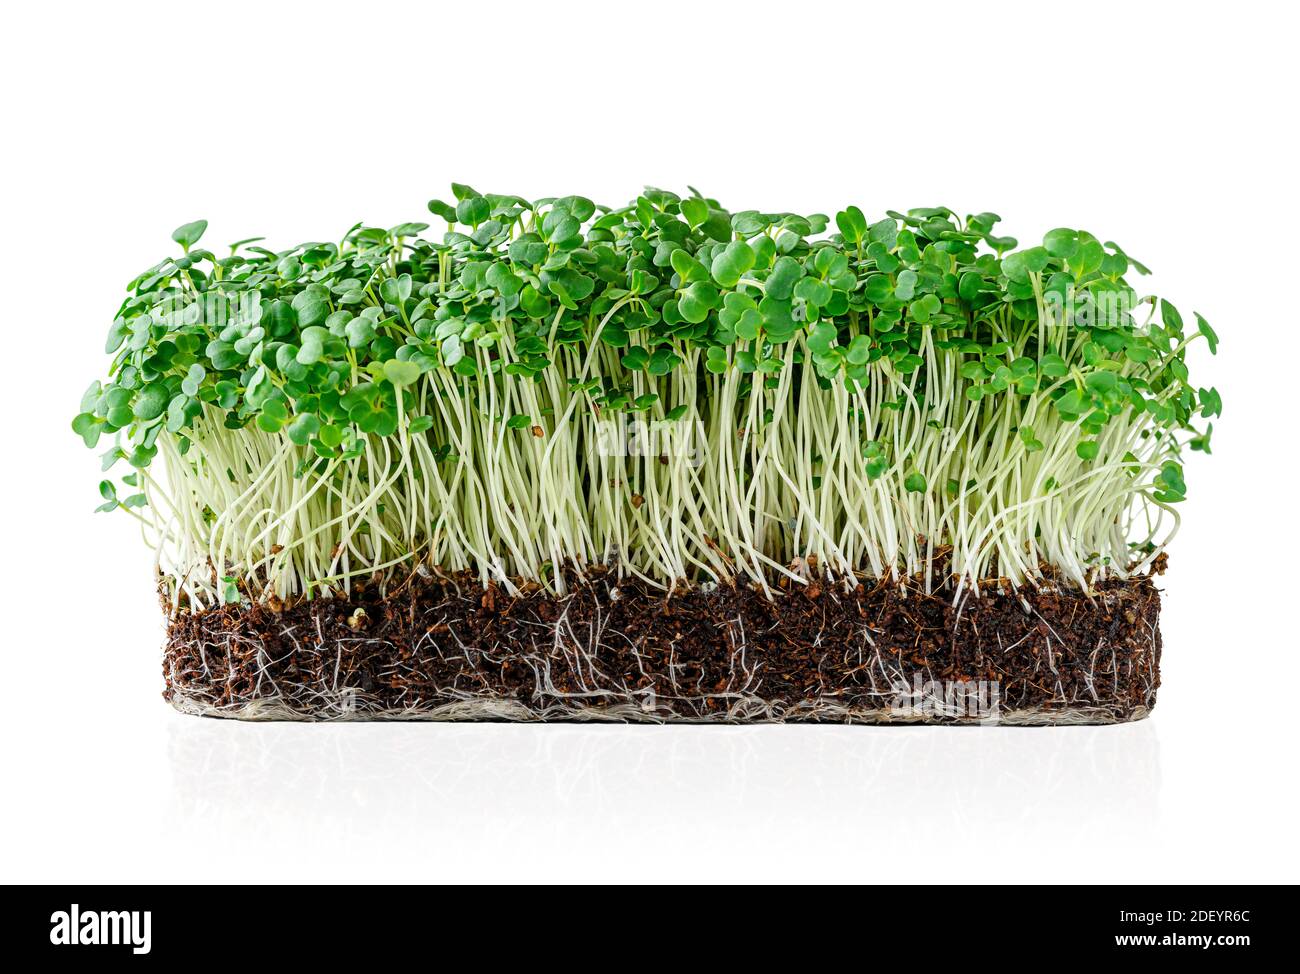 Wachsende Micro Greens arugula Sprossen mit Topfboden isoliert auf weißem Hintergrund. Beschneidungspfad Stockfoto